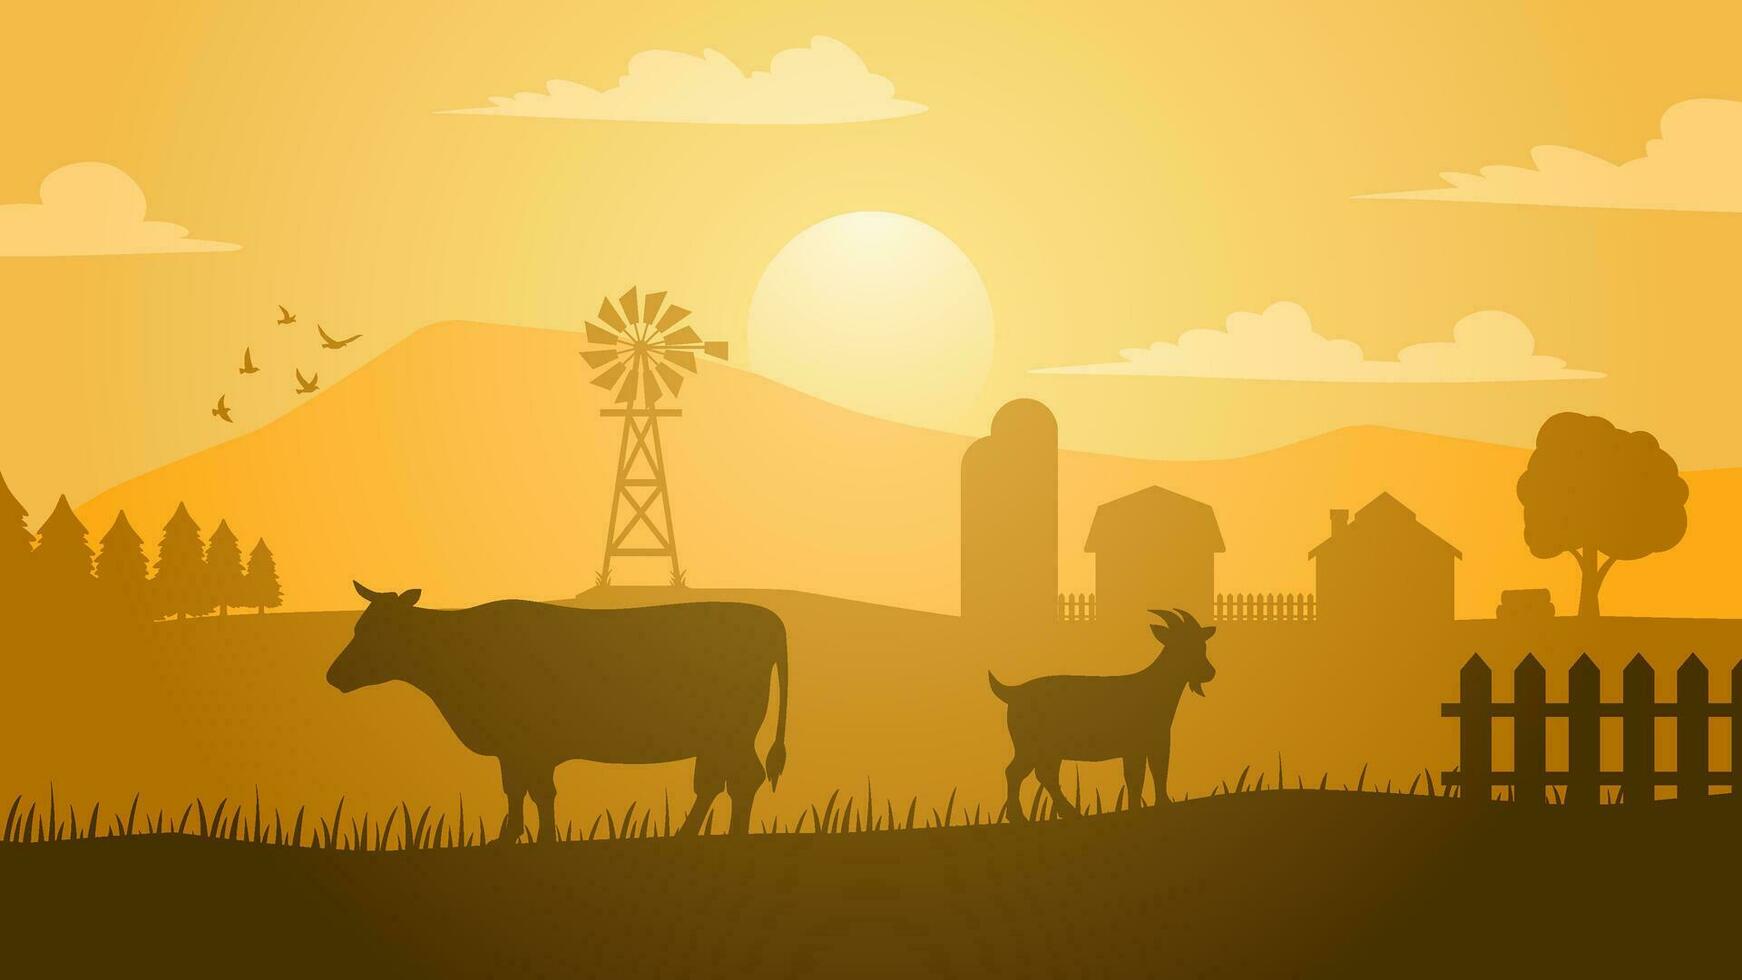 terras agrícolas panorama vetor ilustração. campo silhueta com gado vaca e cabra. rural agricultura panorama para ilustração, fundo ou papel de parede